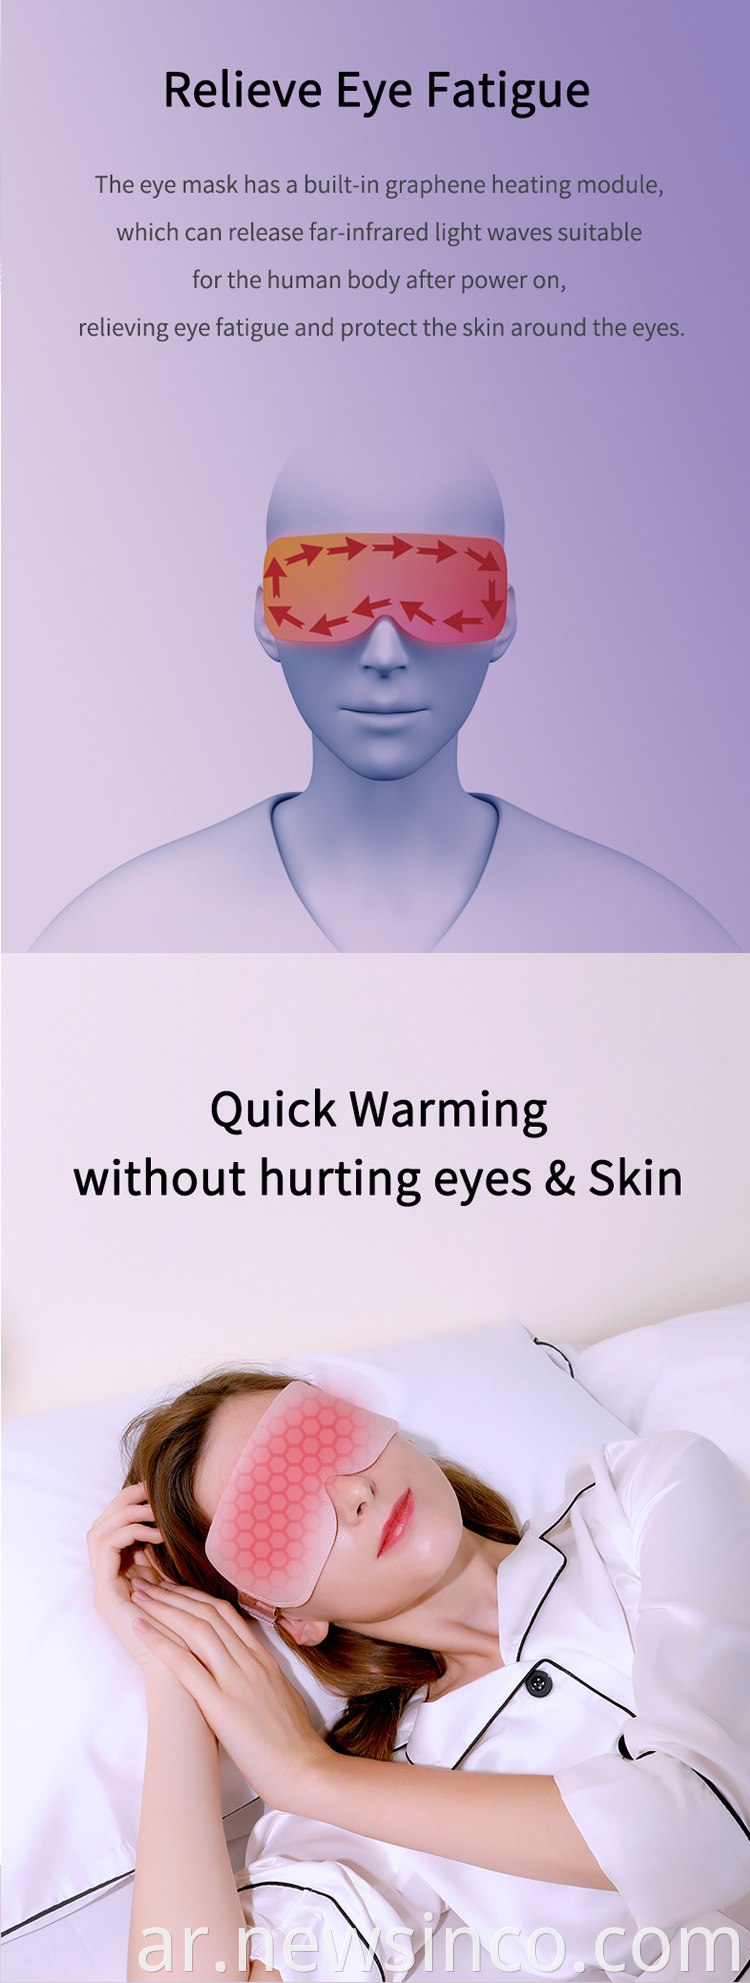 غطاء العين جيد السعر مع وظيفة التدفئة جيدة أغطية العين للتدفئة للنوم